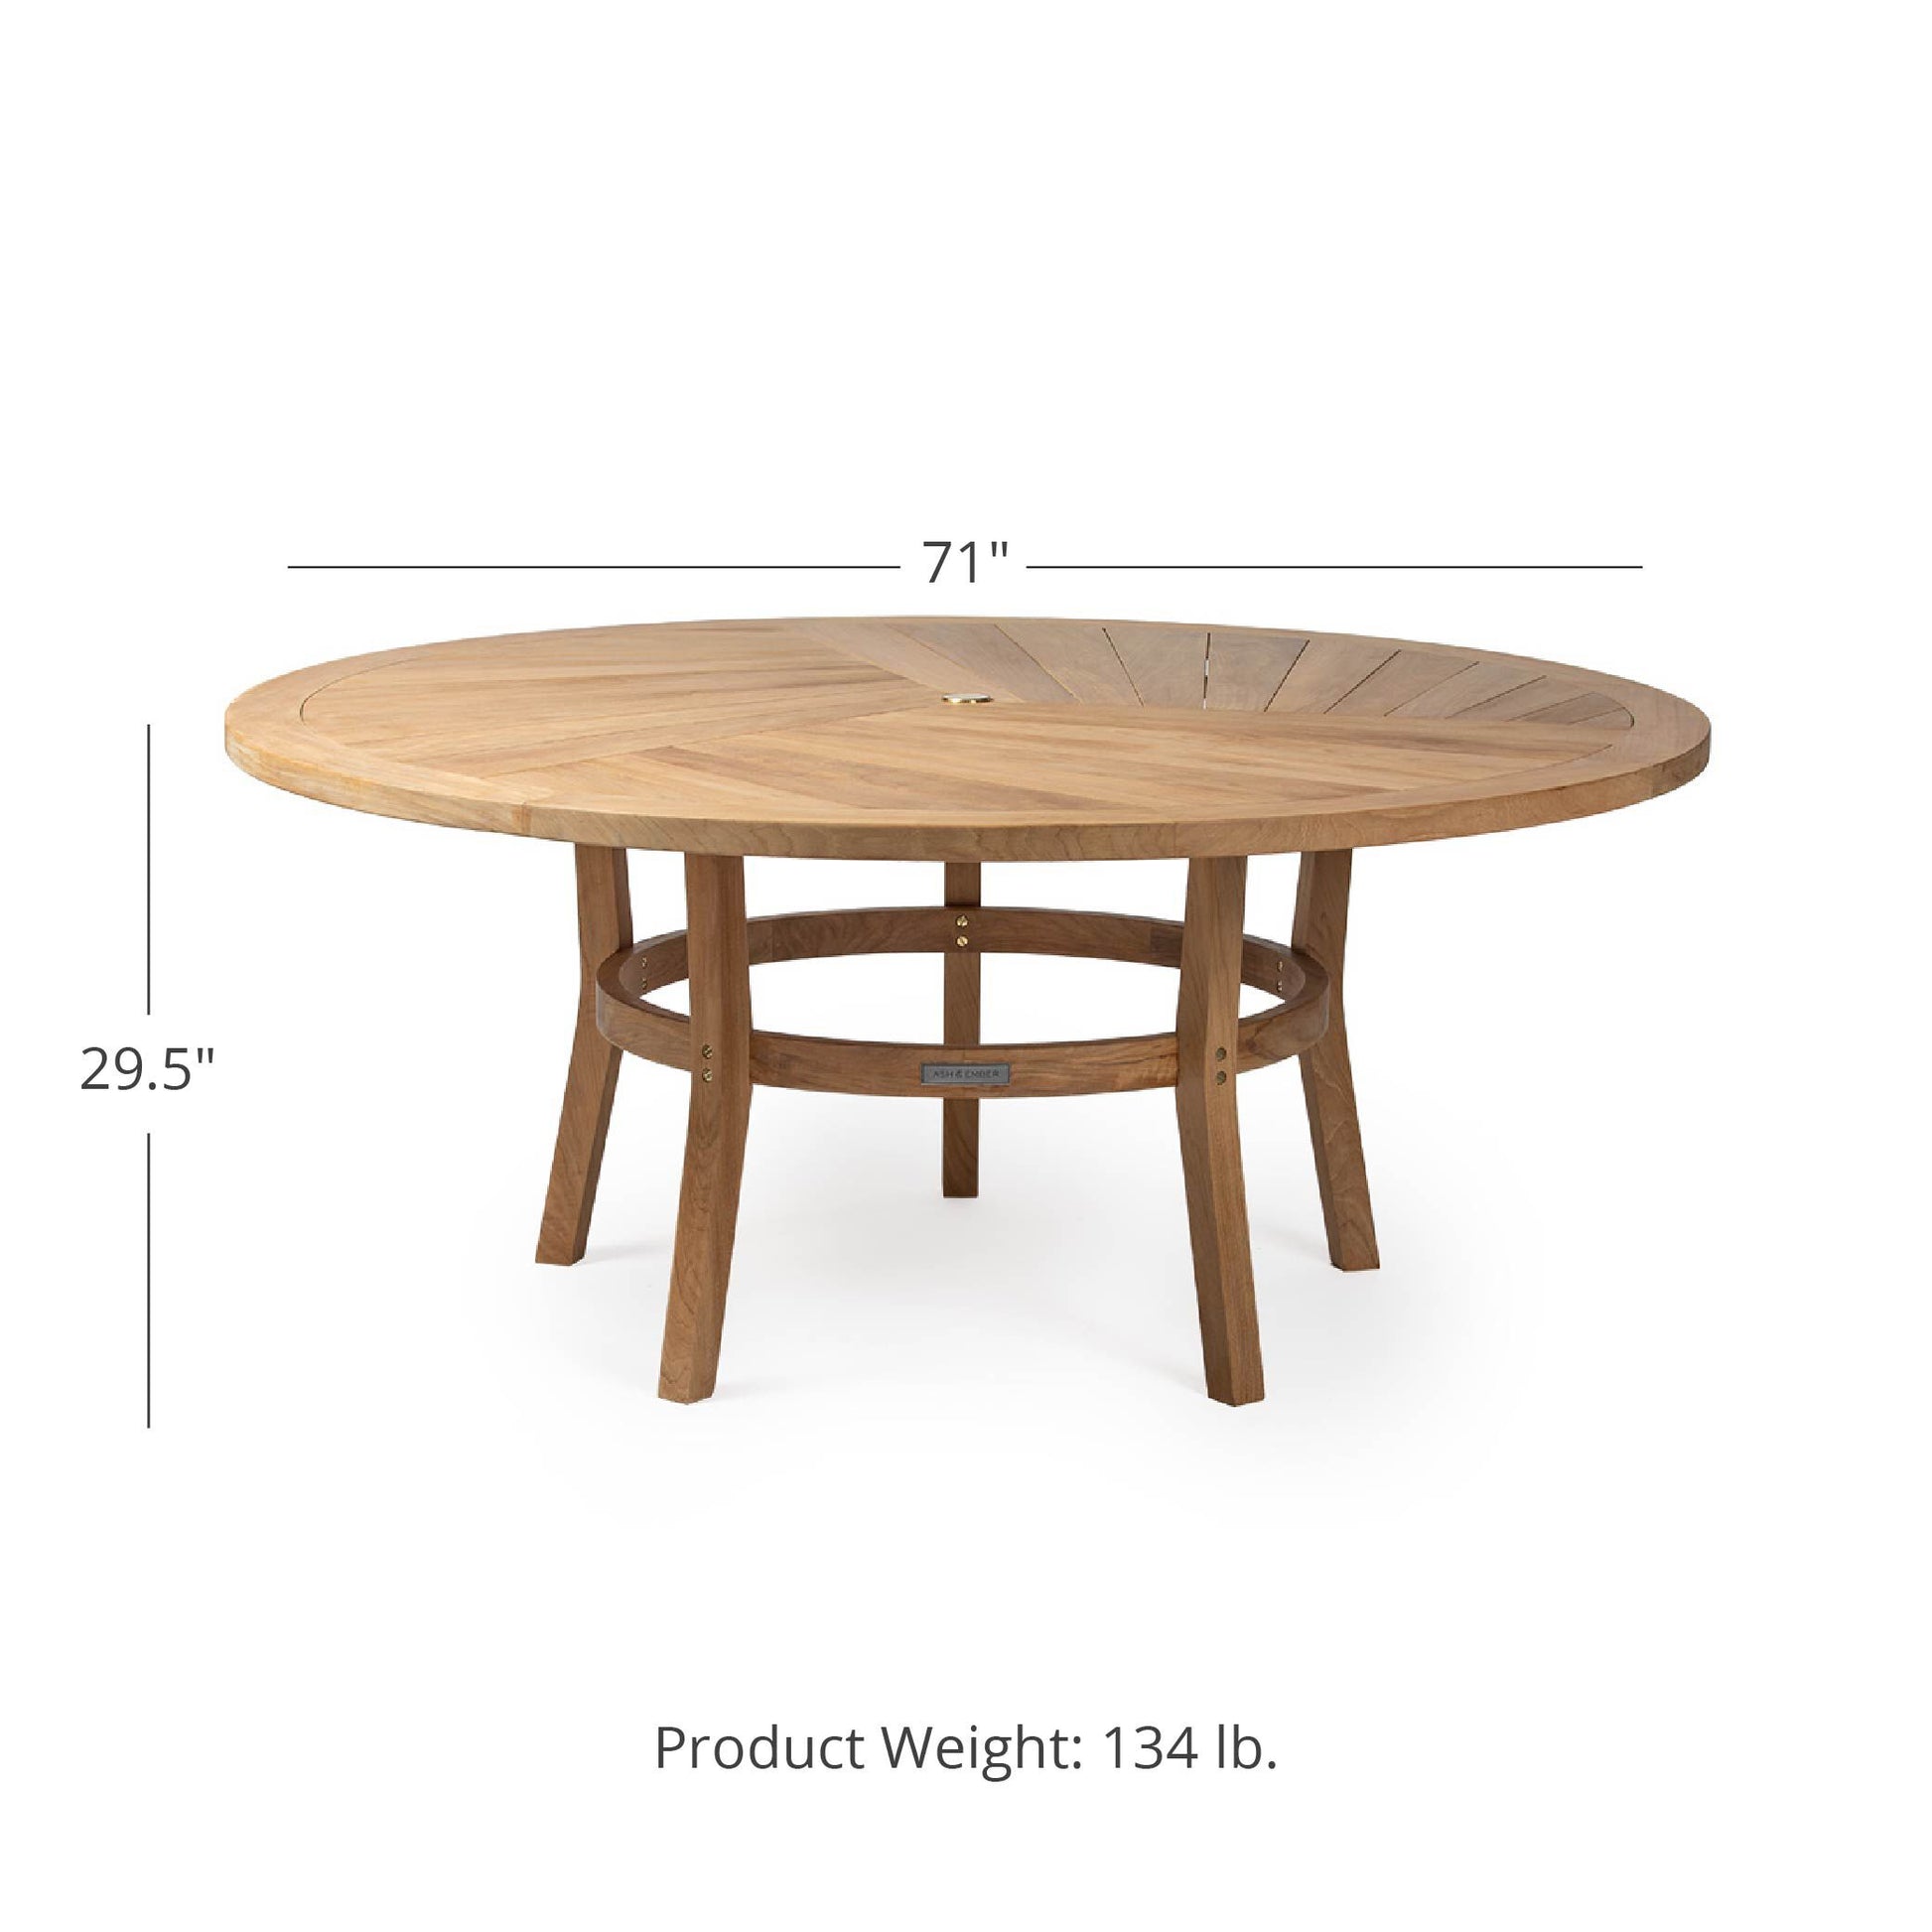 Savannah Grade A Teak Table - Tabletop Size: 71" | 71"